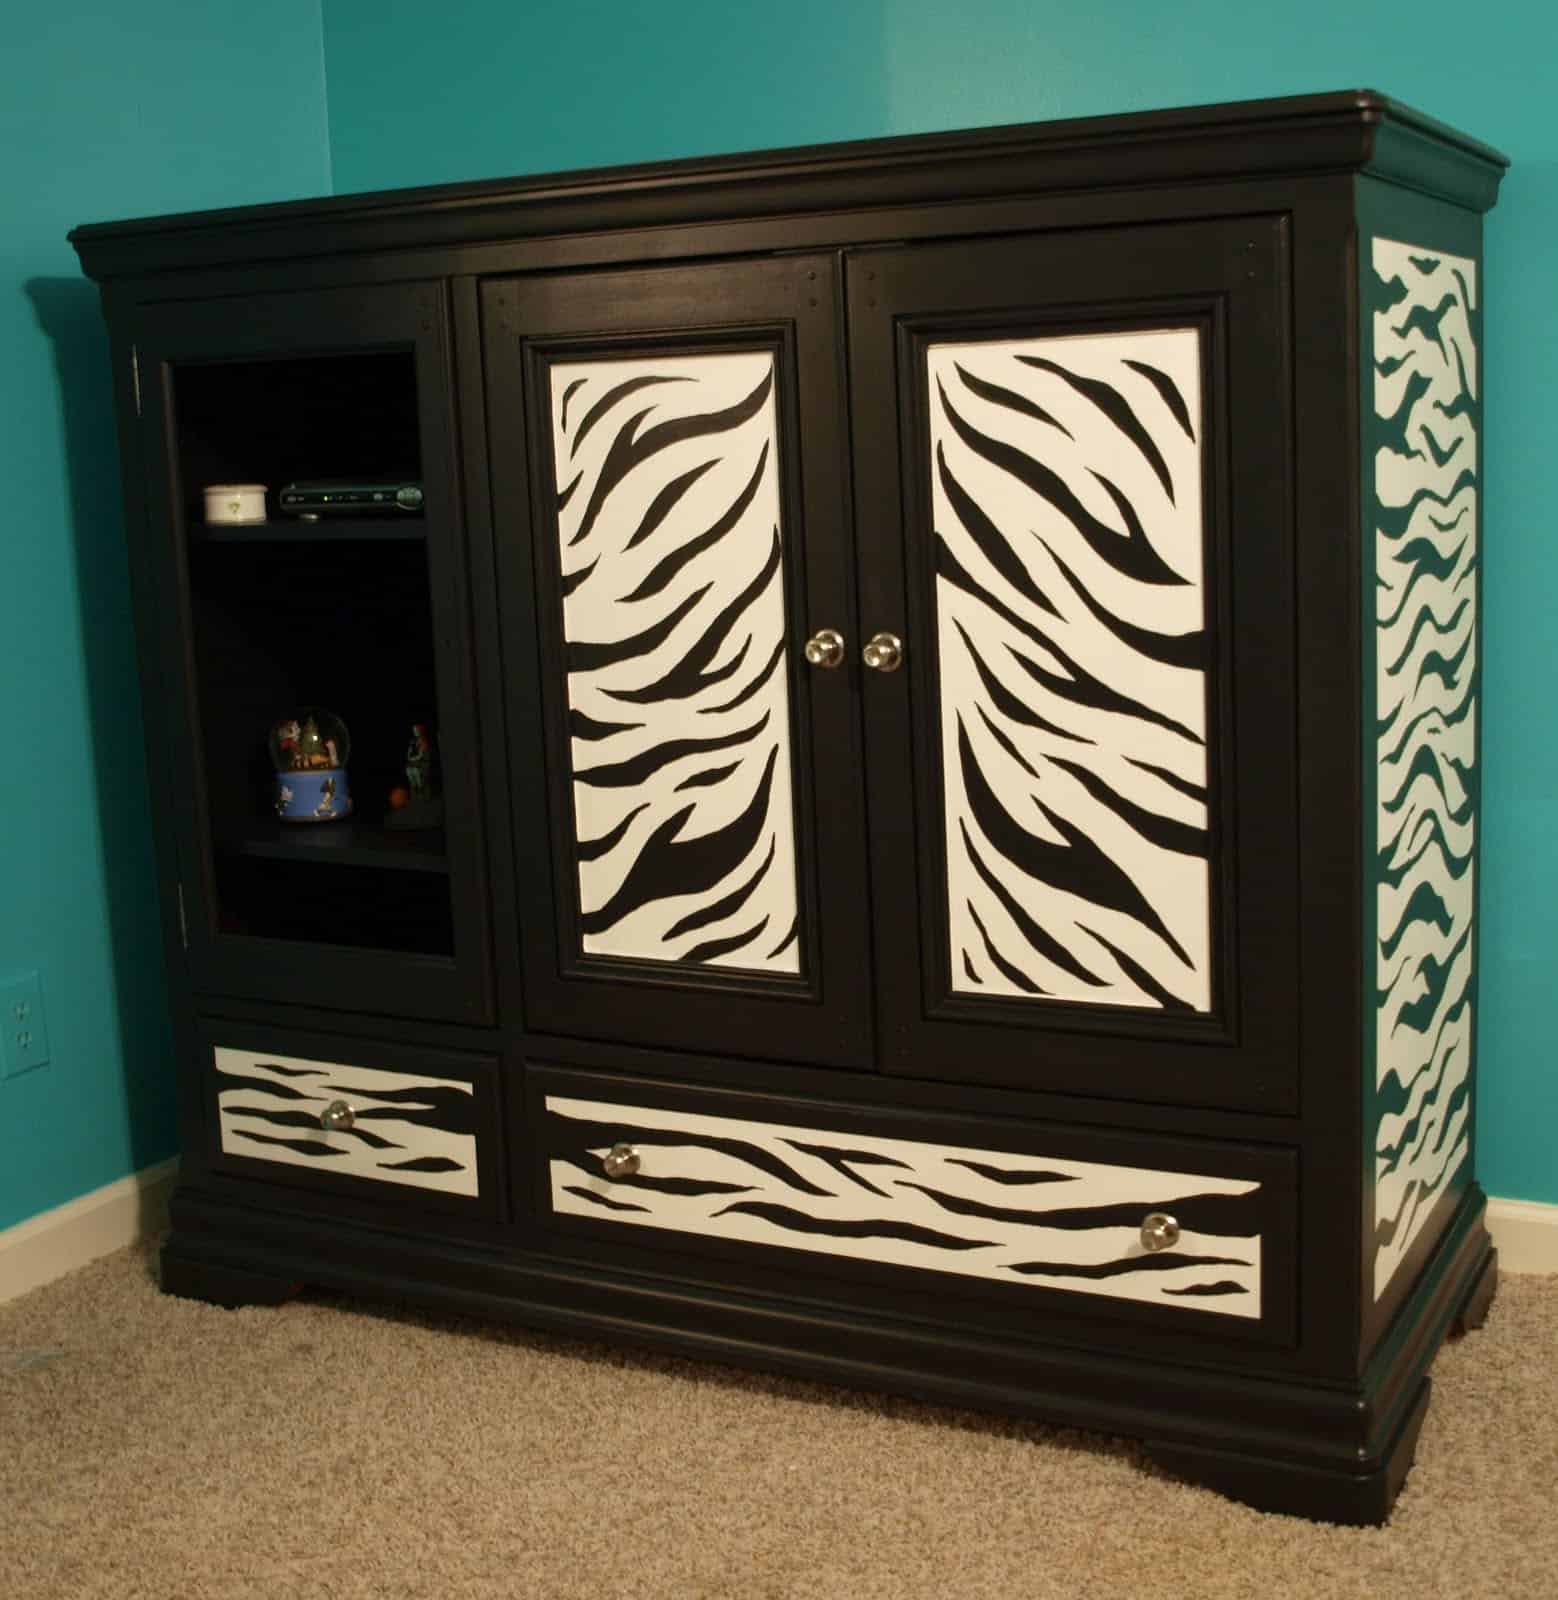 Zebra furniture